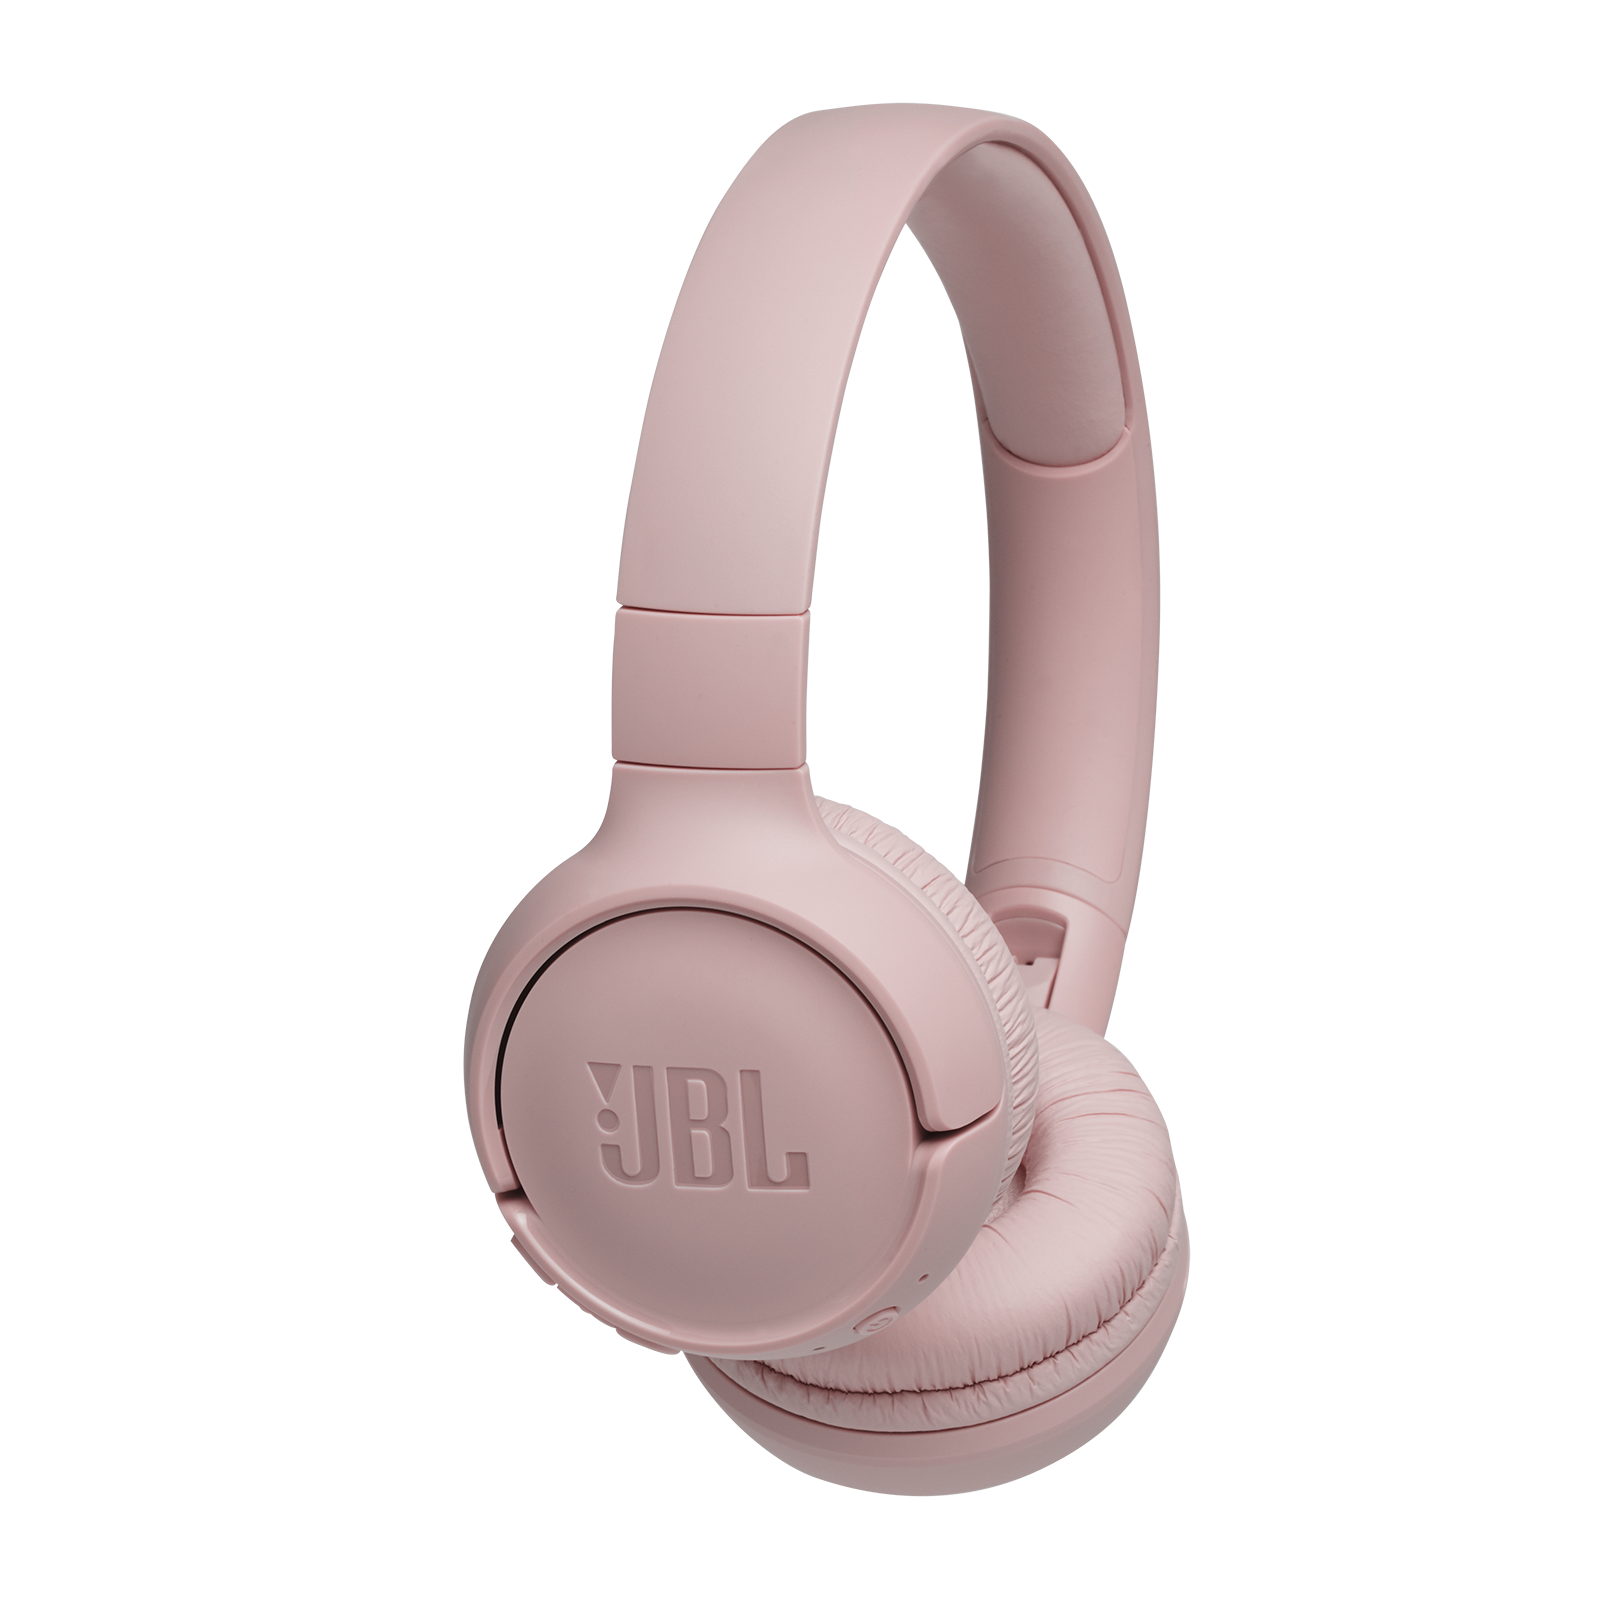 JBL 500BT | Trådløse on-ear hovedtelefoner